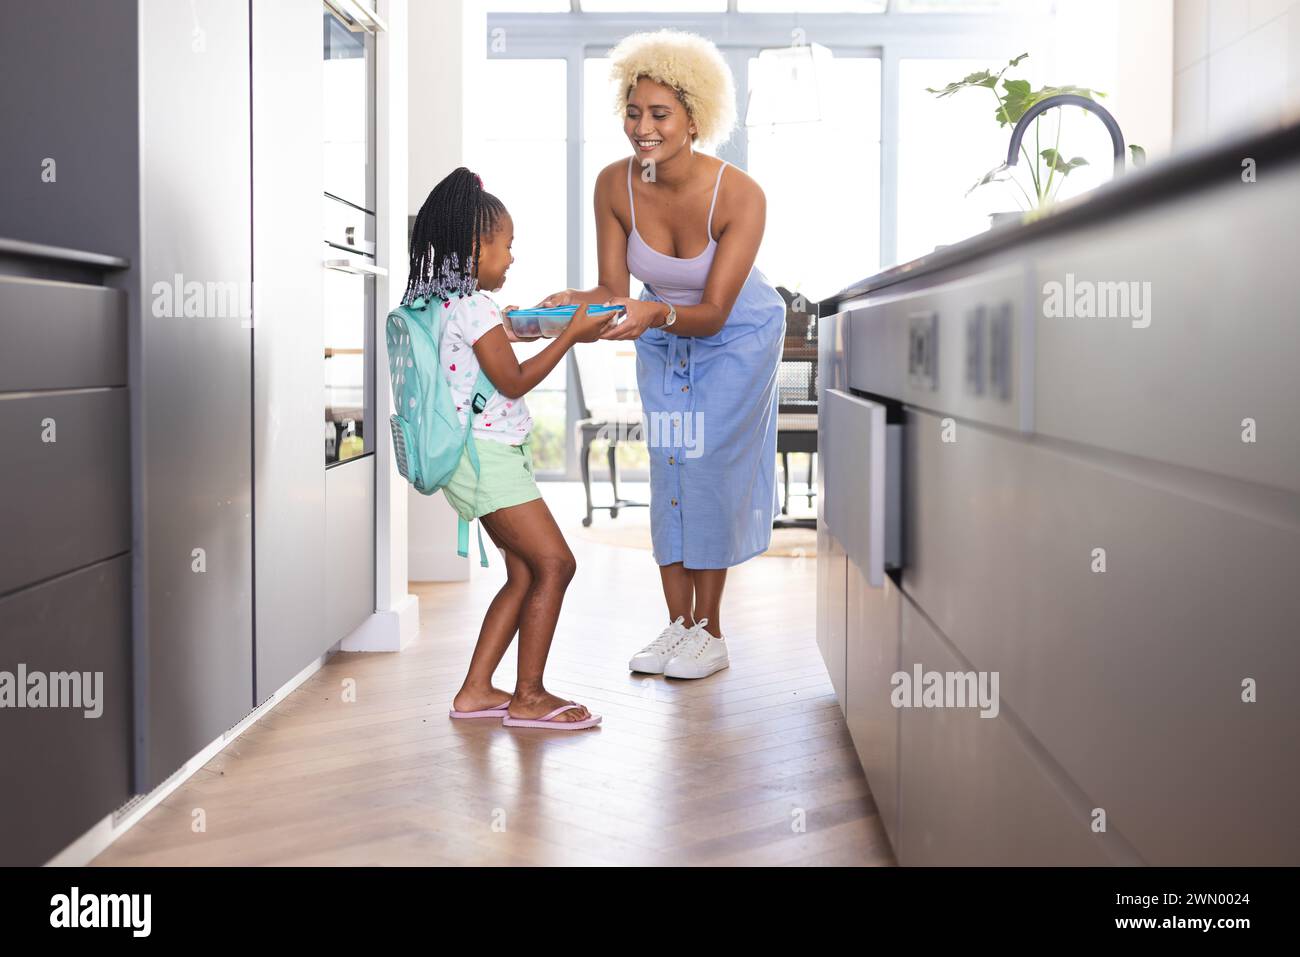 Une jeune mère biraciale tend une boîte à lunch à une fille afro-américaine dans une cuisine Banque D'Images